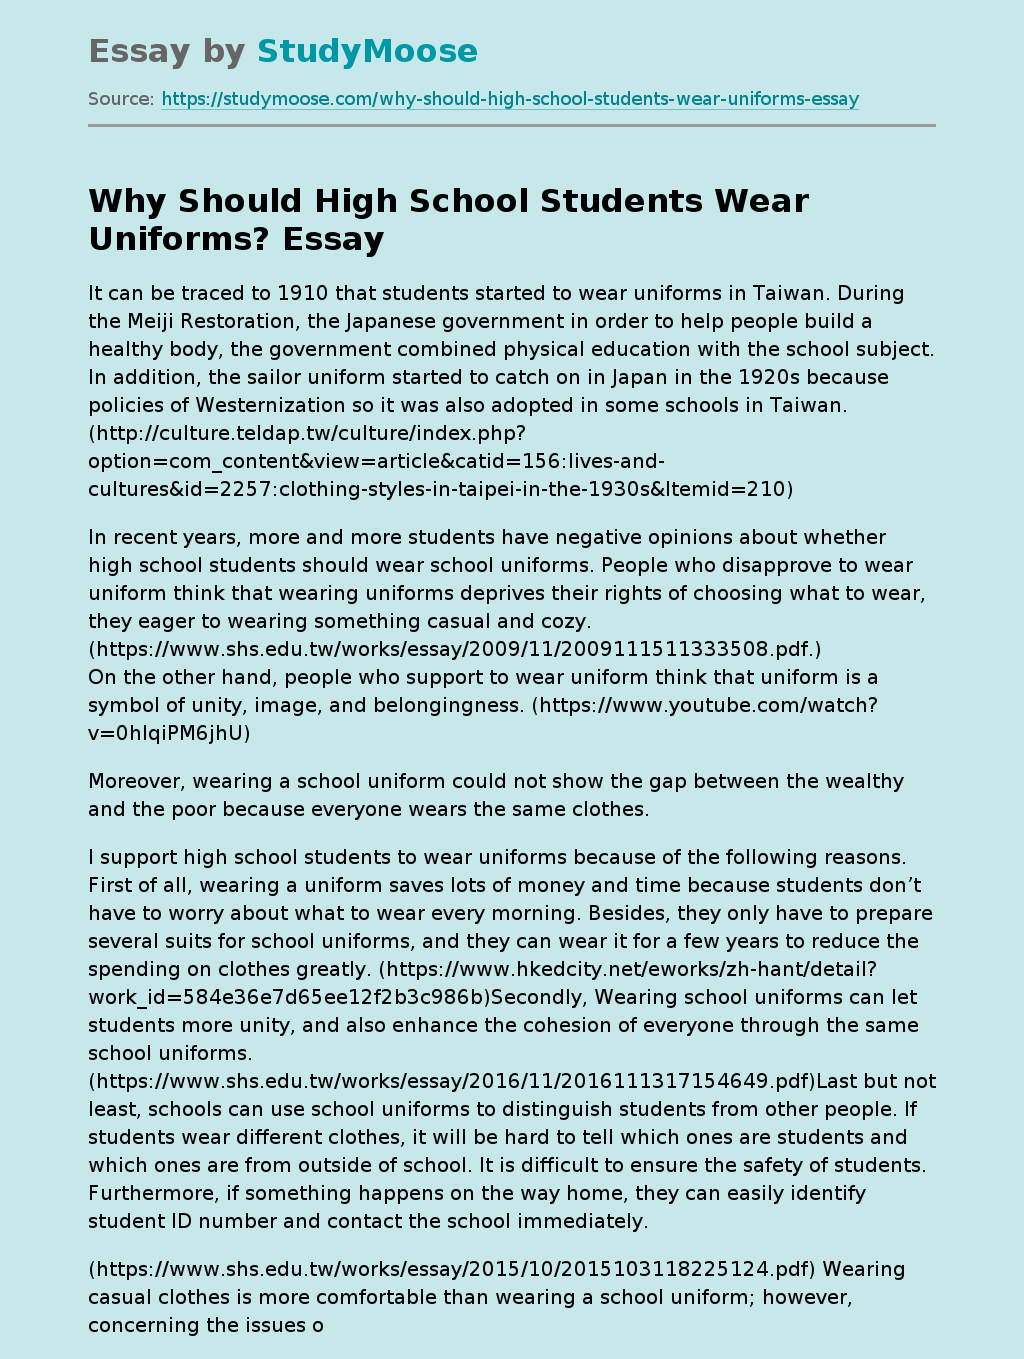 Should Students Wear Uniforms in School?